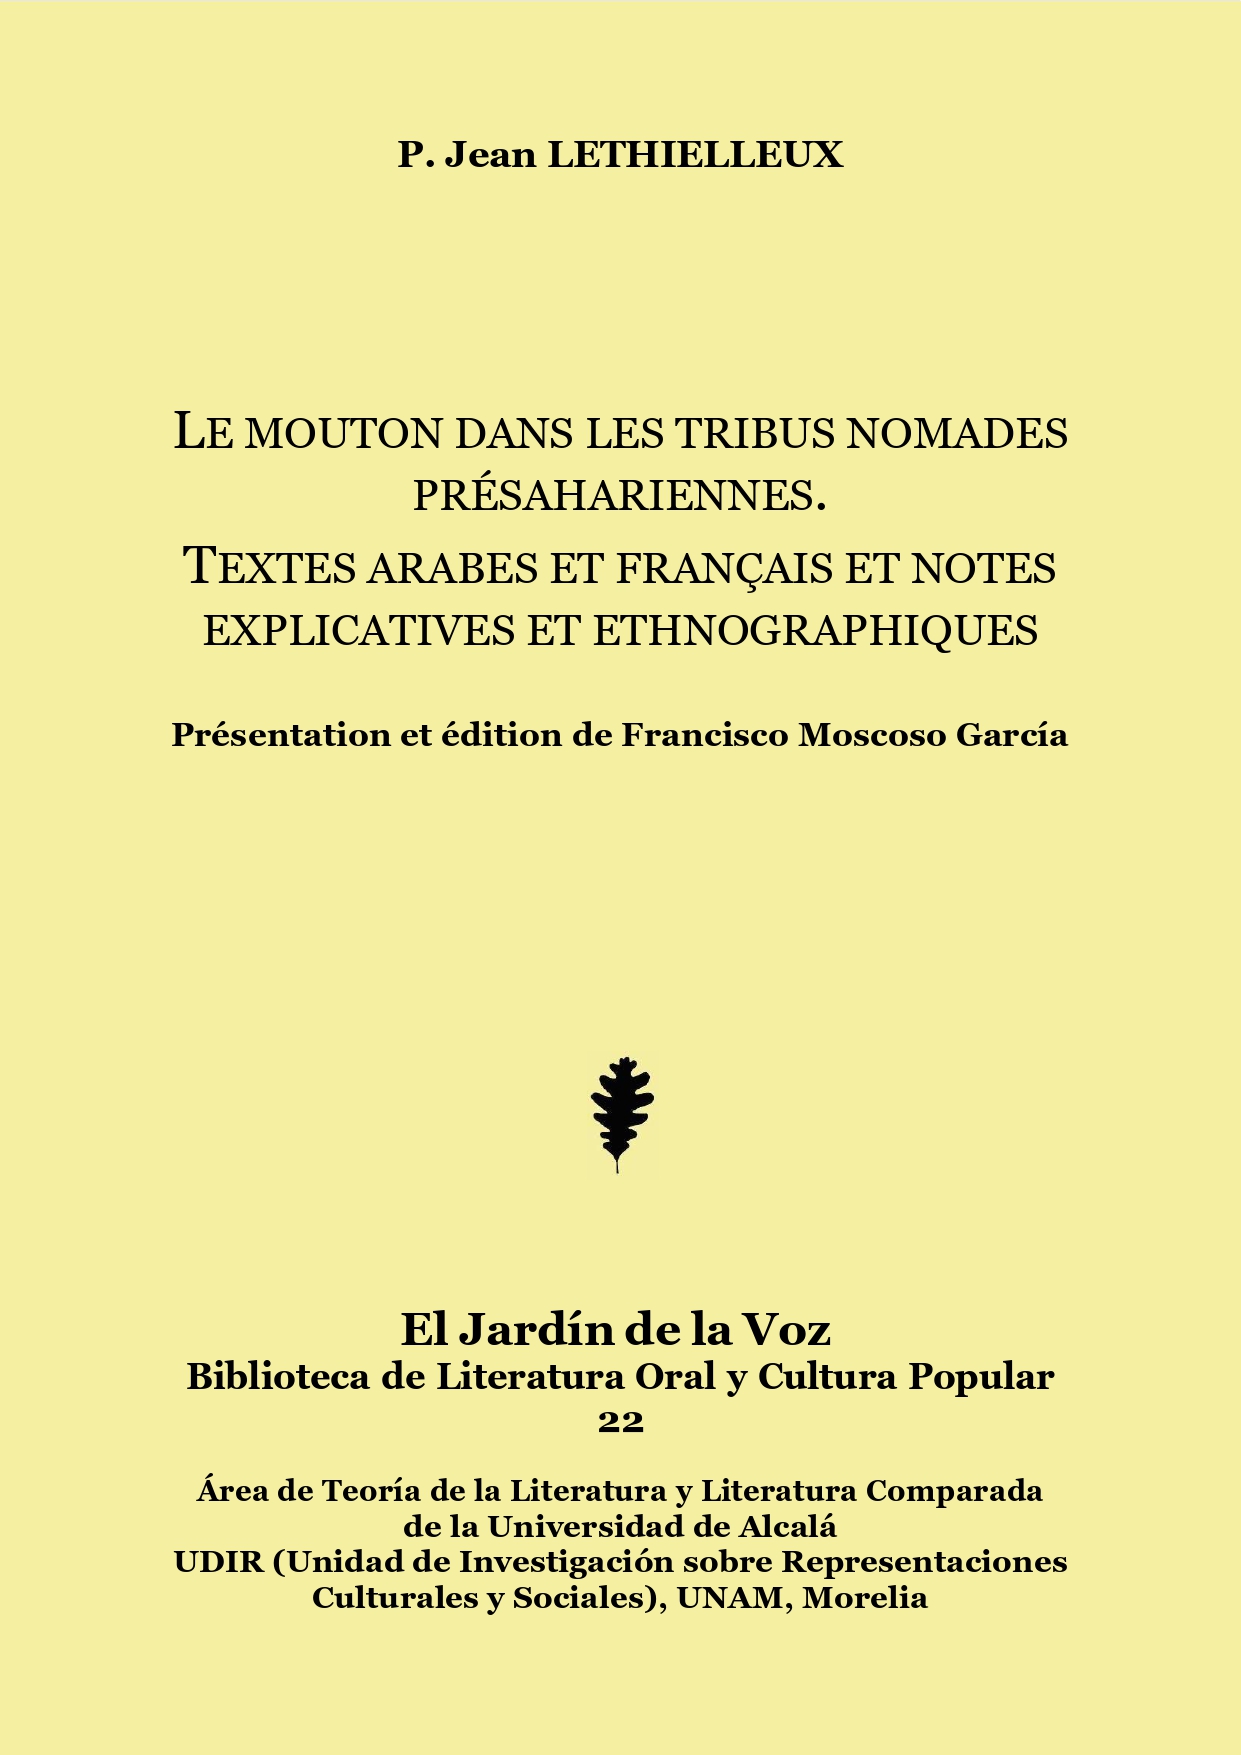 Imagen de portada del libro Le mouton dans les tribus nomades présahariennes